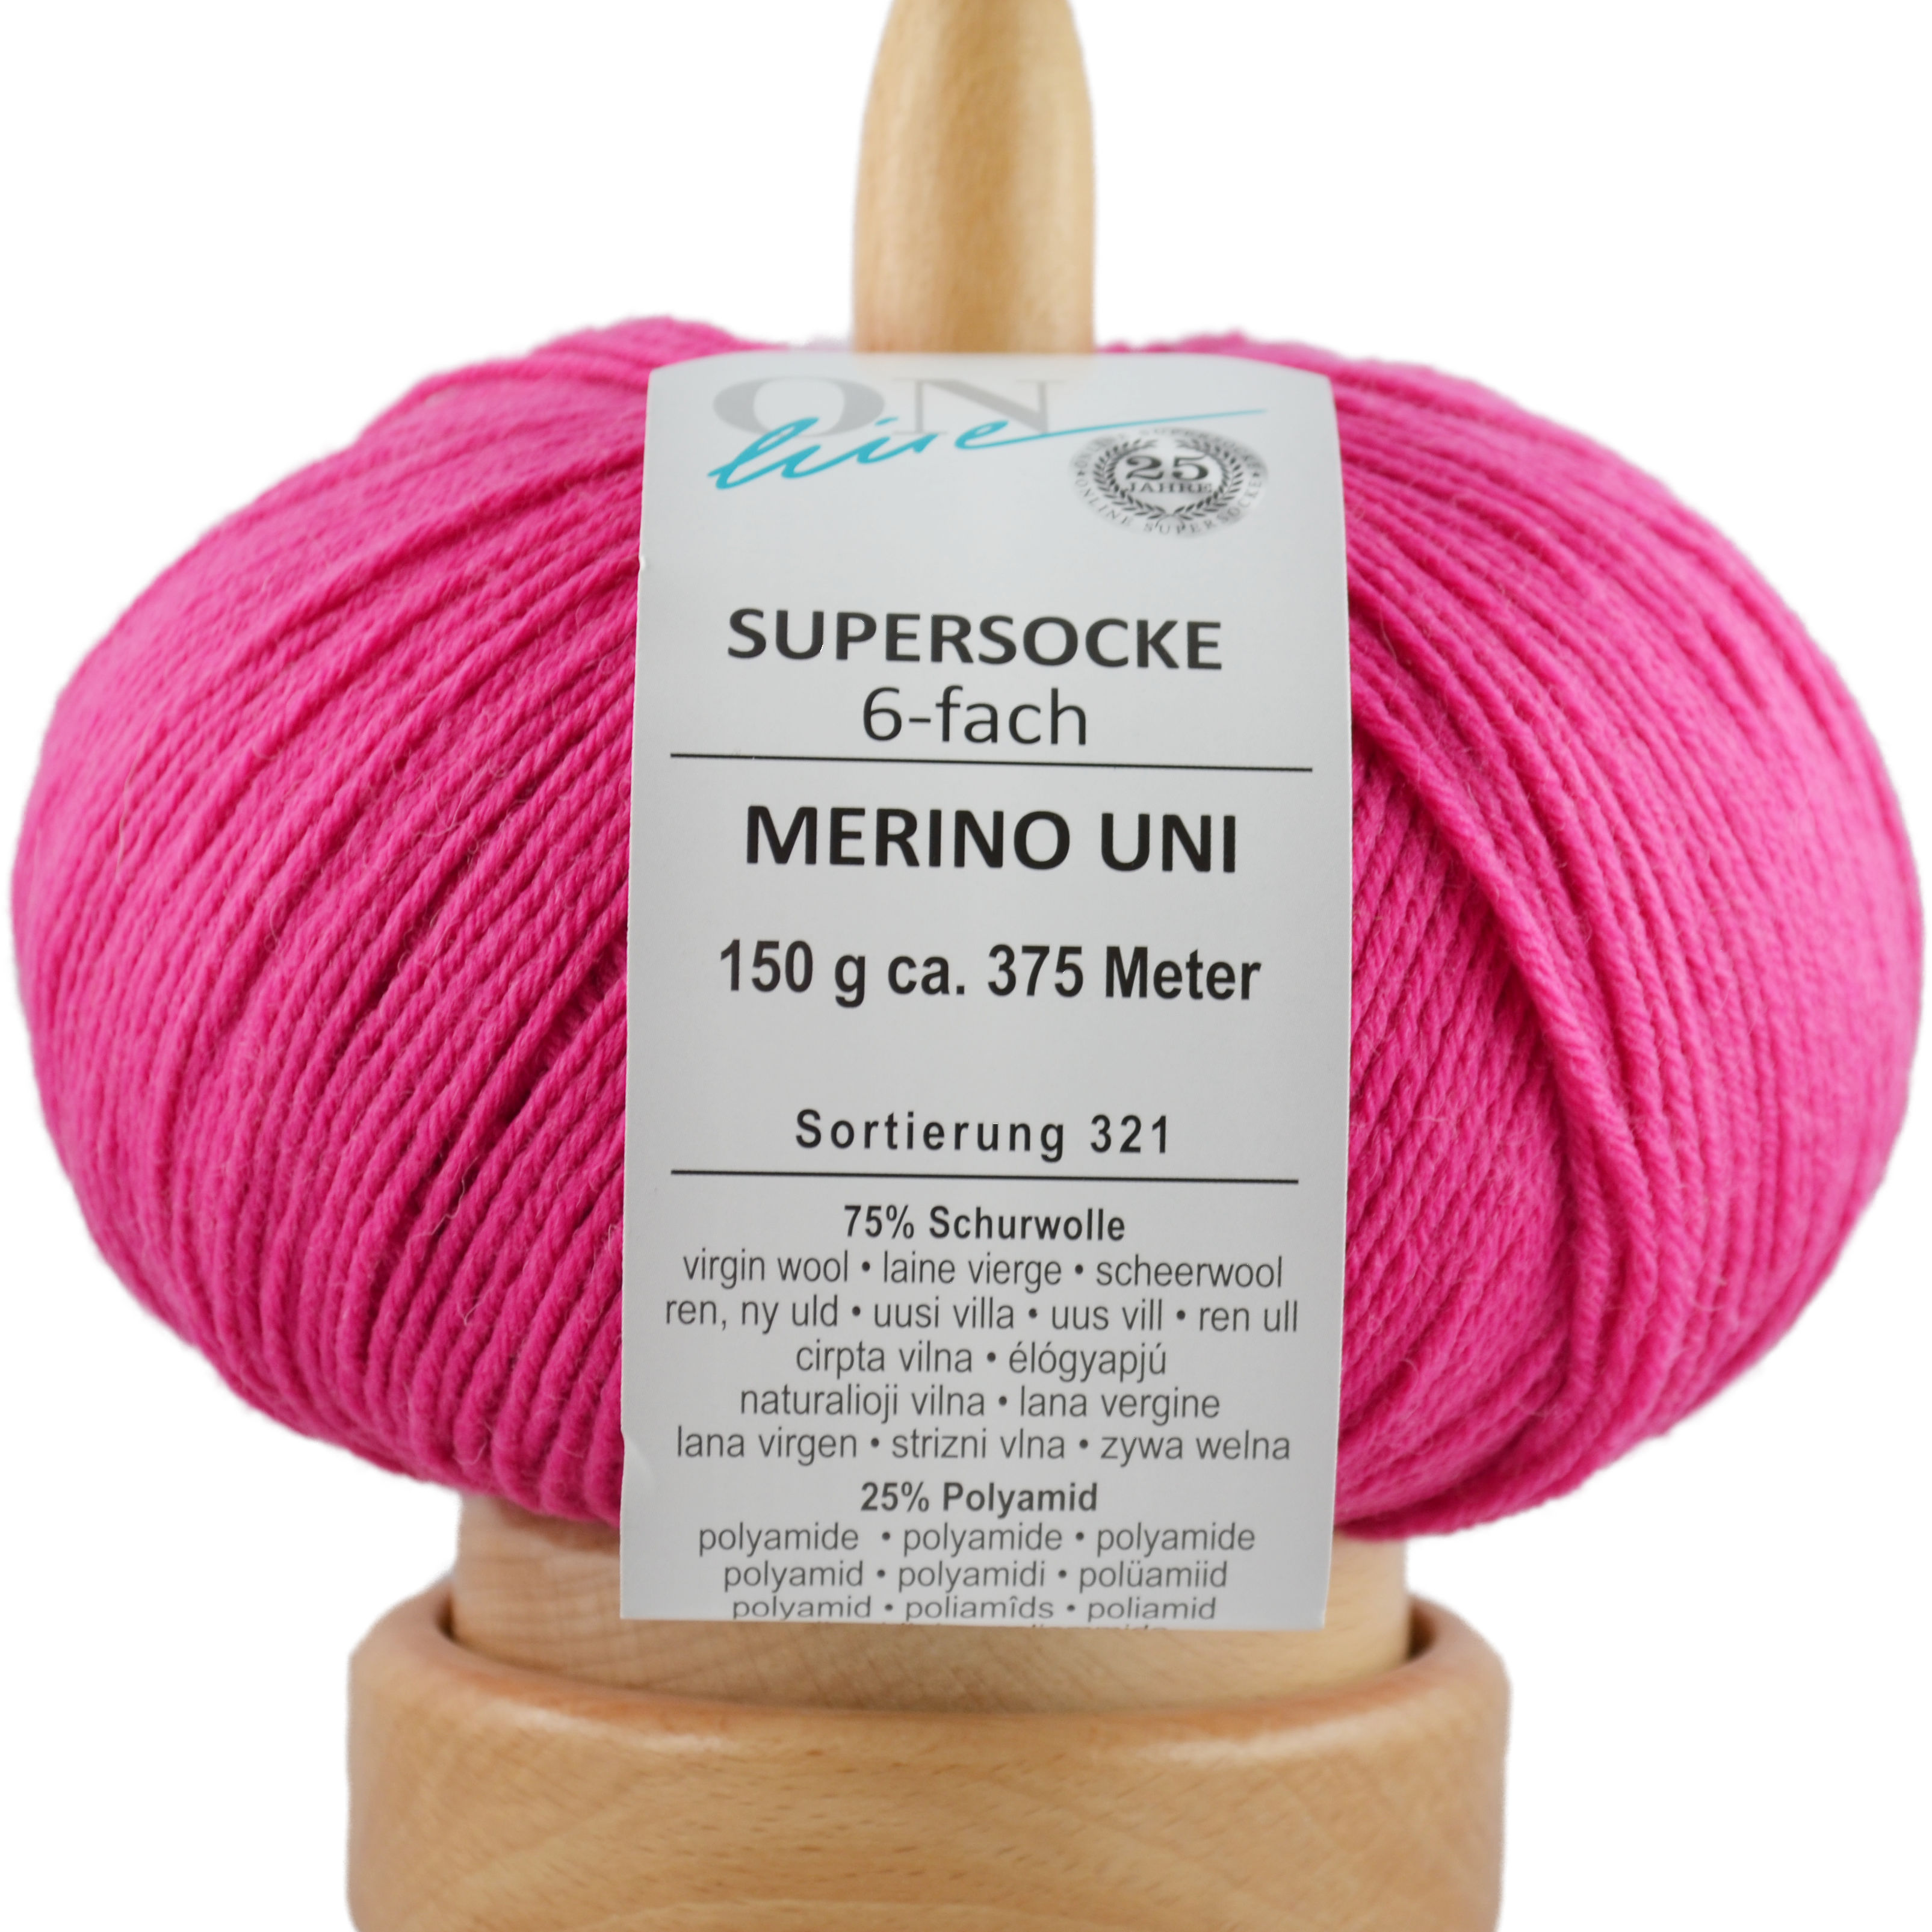 Supersocke 6-fach Merino Uni von ONline Sort. 321 - 5002 - pink